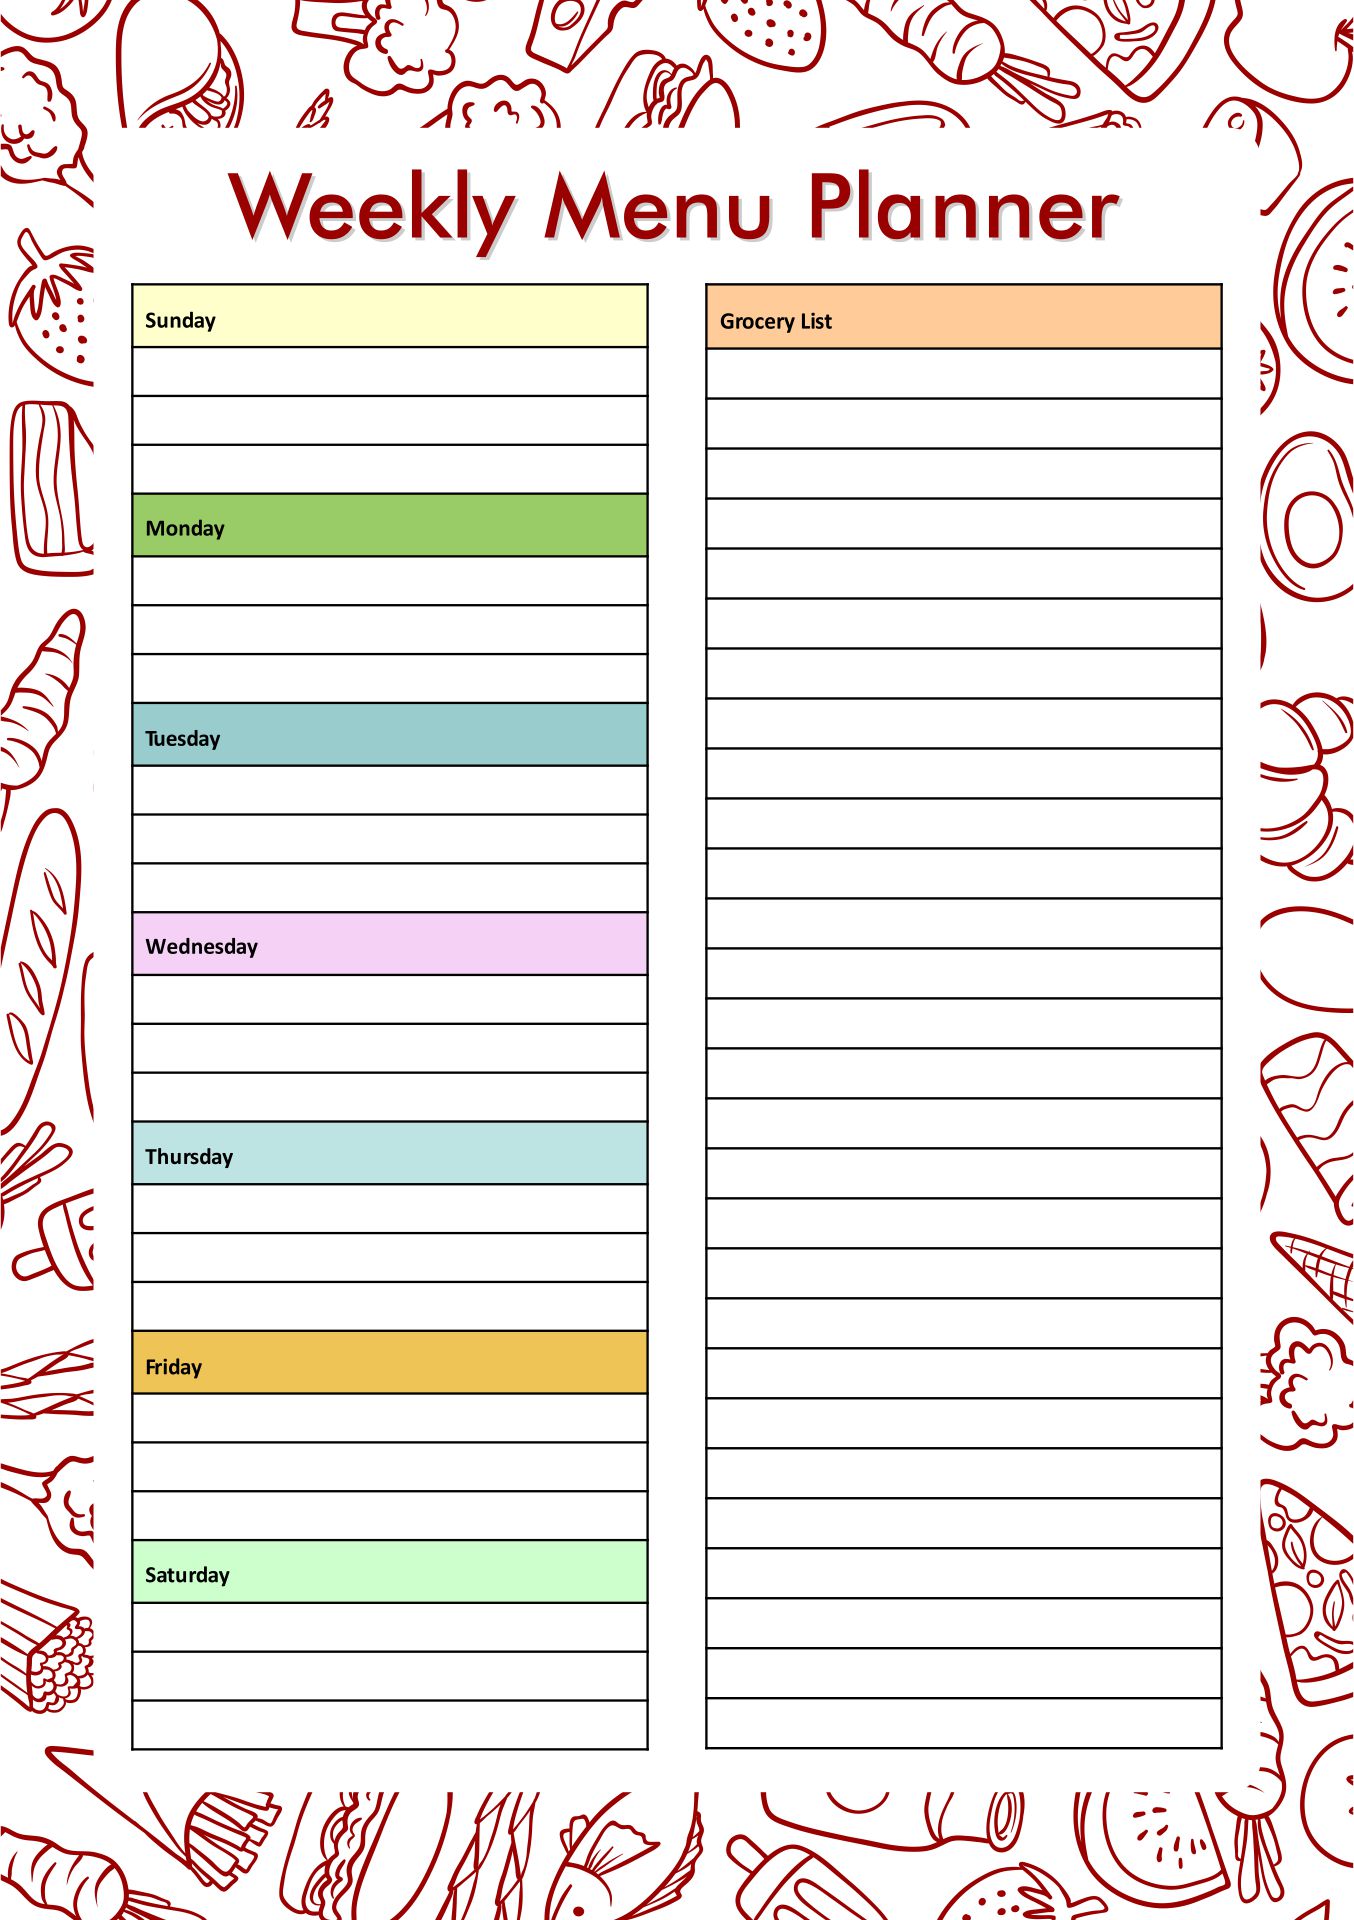 weekly-meal-planner-template-printable-fresh-weekly-meal-planner-template-with-grocery-list